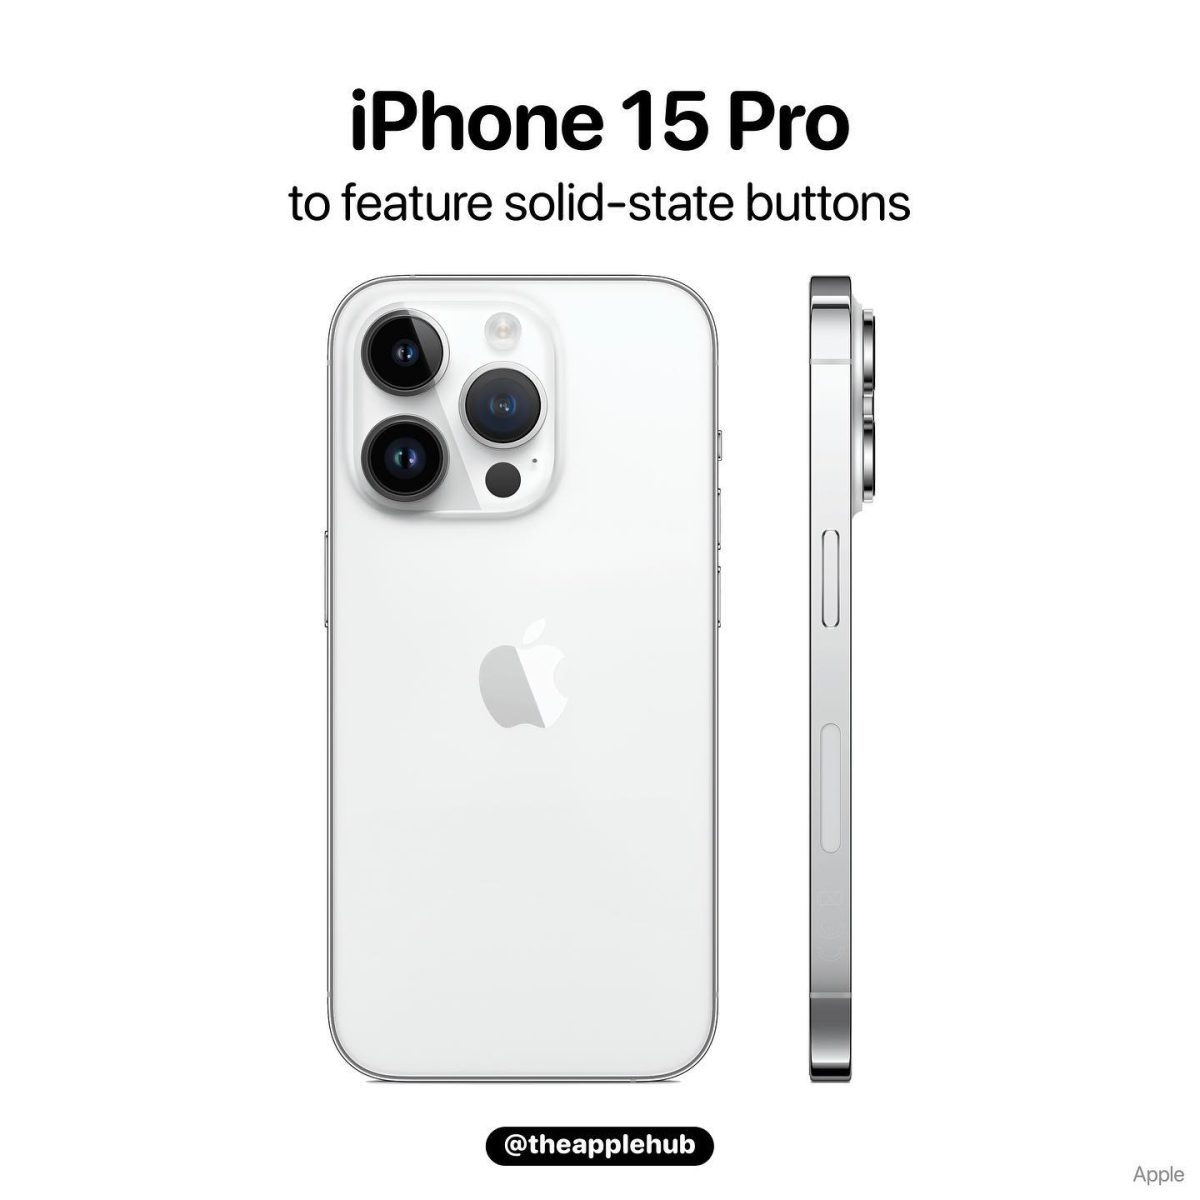 iPhone14 Proを買わずにiPhone15 Proを待つべき？ - iPhone Mania